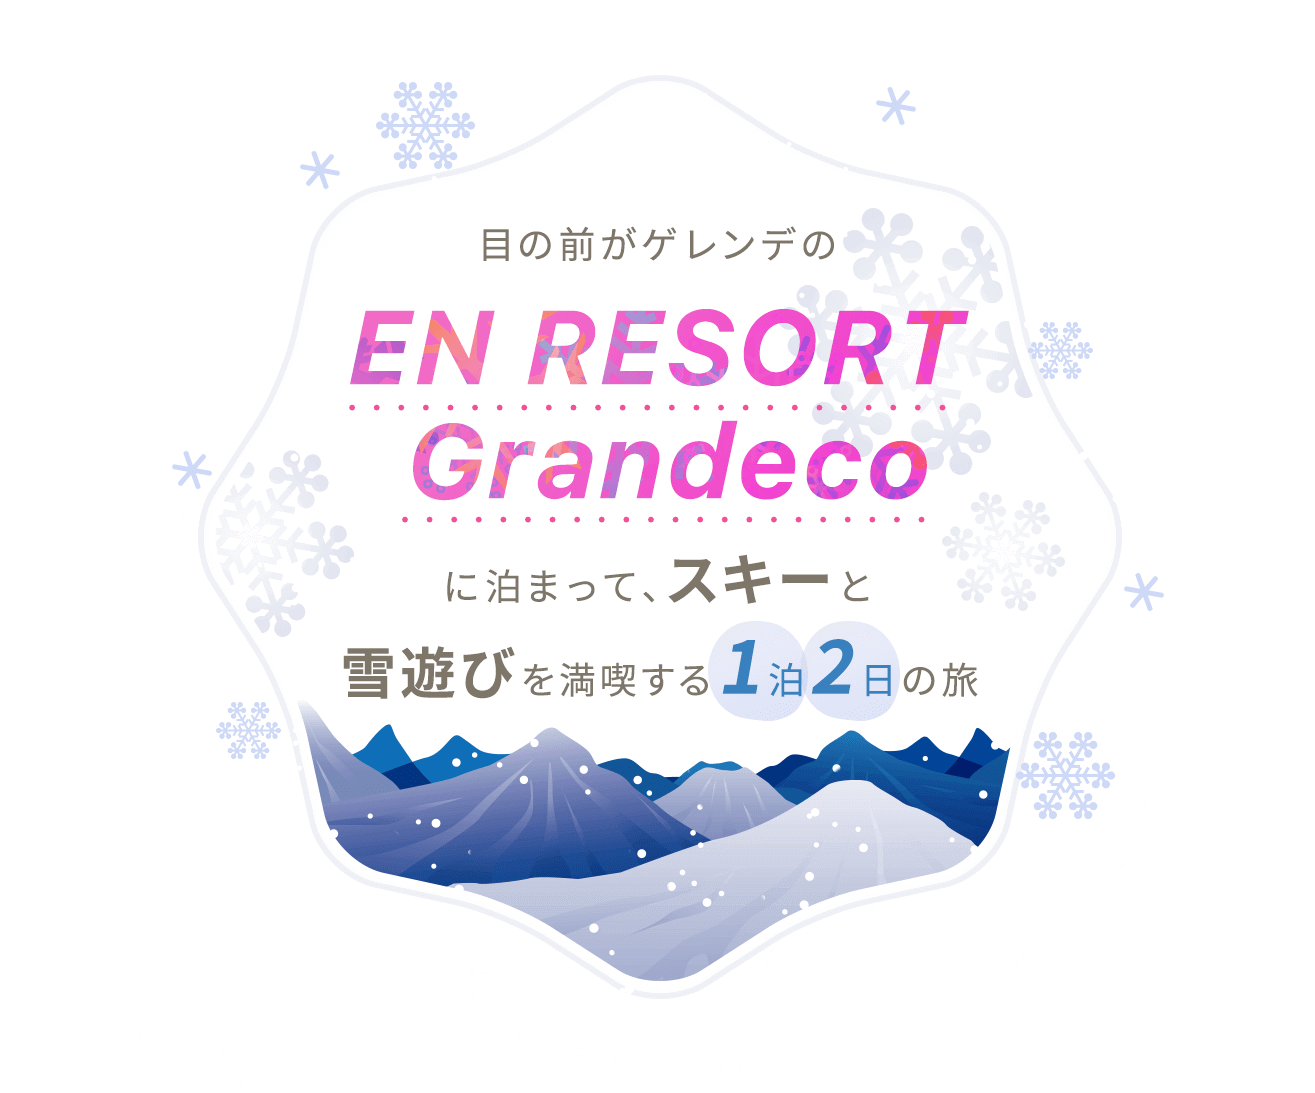 【冬の東北でスキーを楽しみたい人は必見】目の前がゲレンデの「EN RESORT Grandeco」に泊まって、スキーと雪遊びを満喫する1泊2日の旅